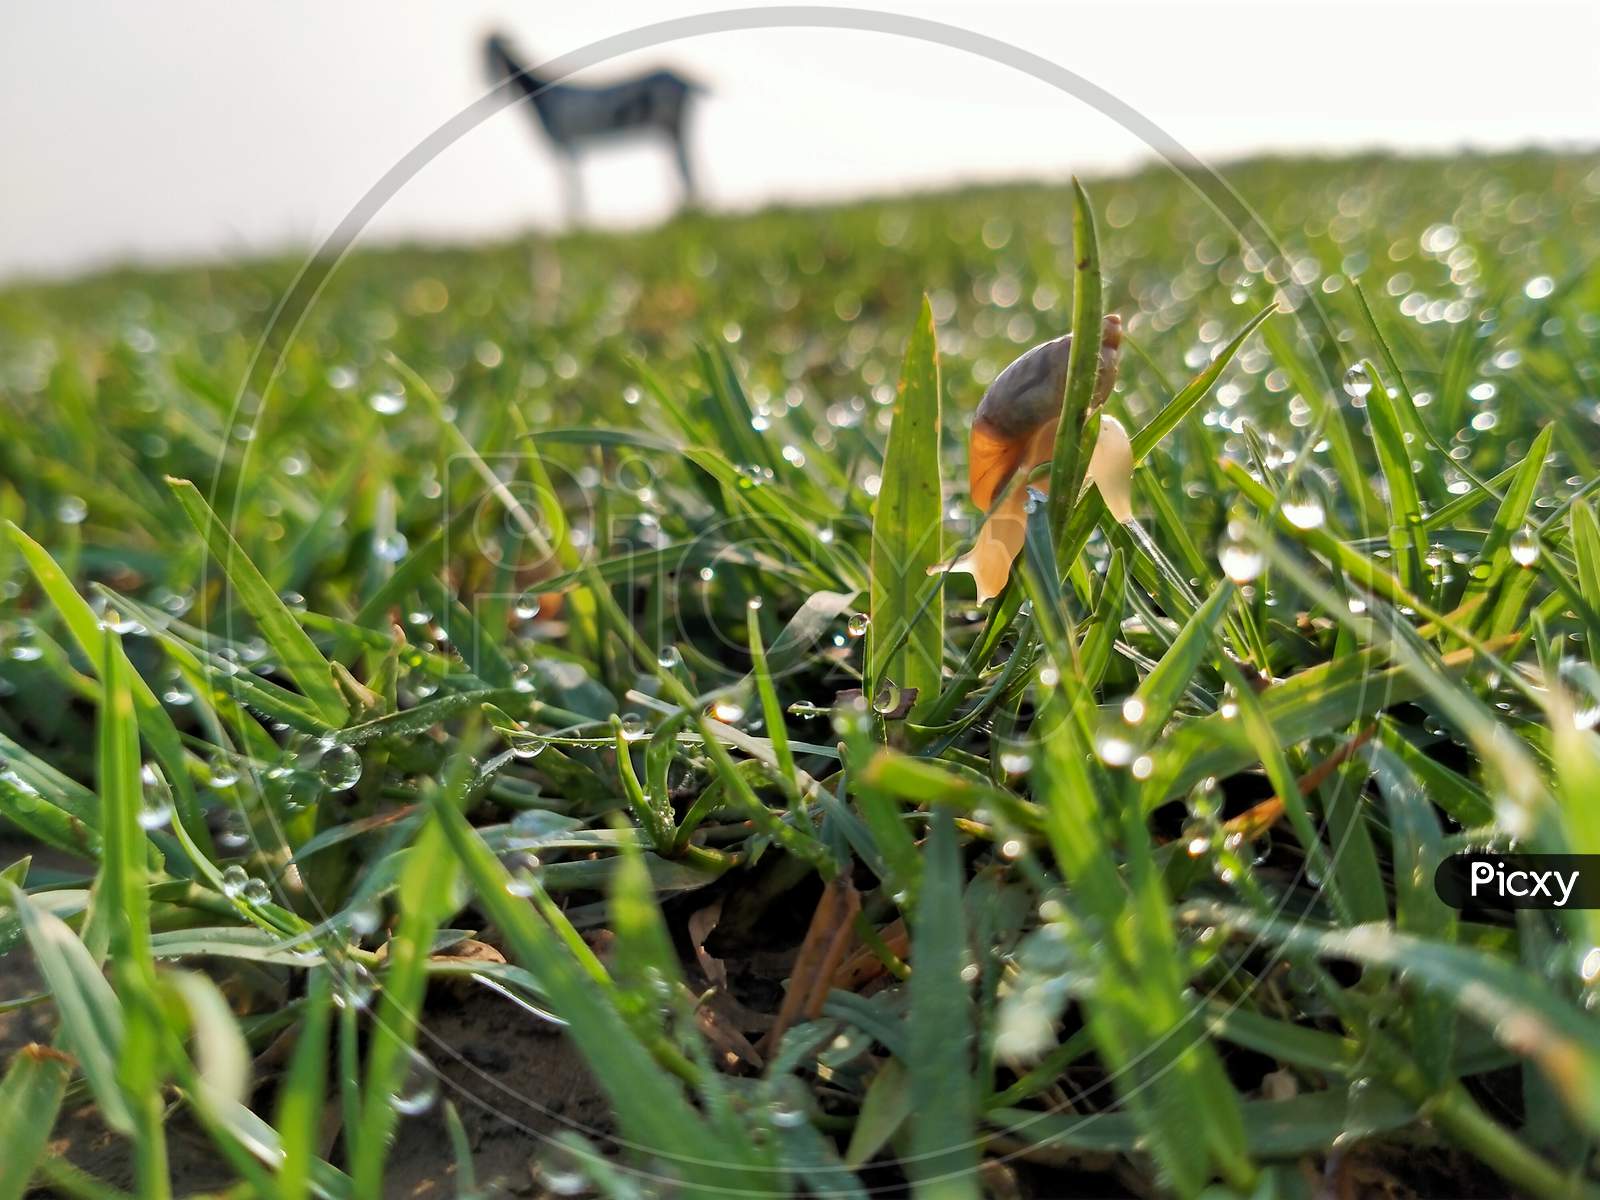 Landsnail is on the wet grass in field.